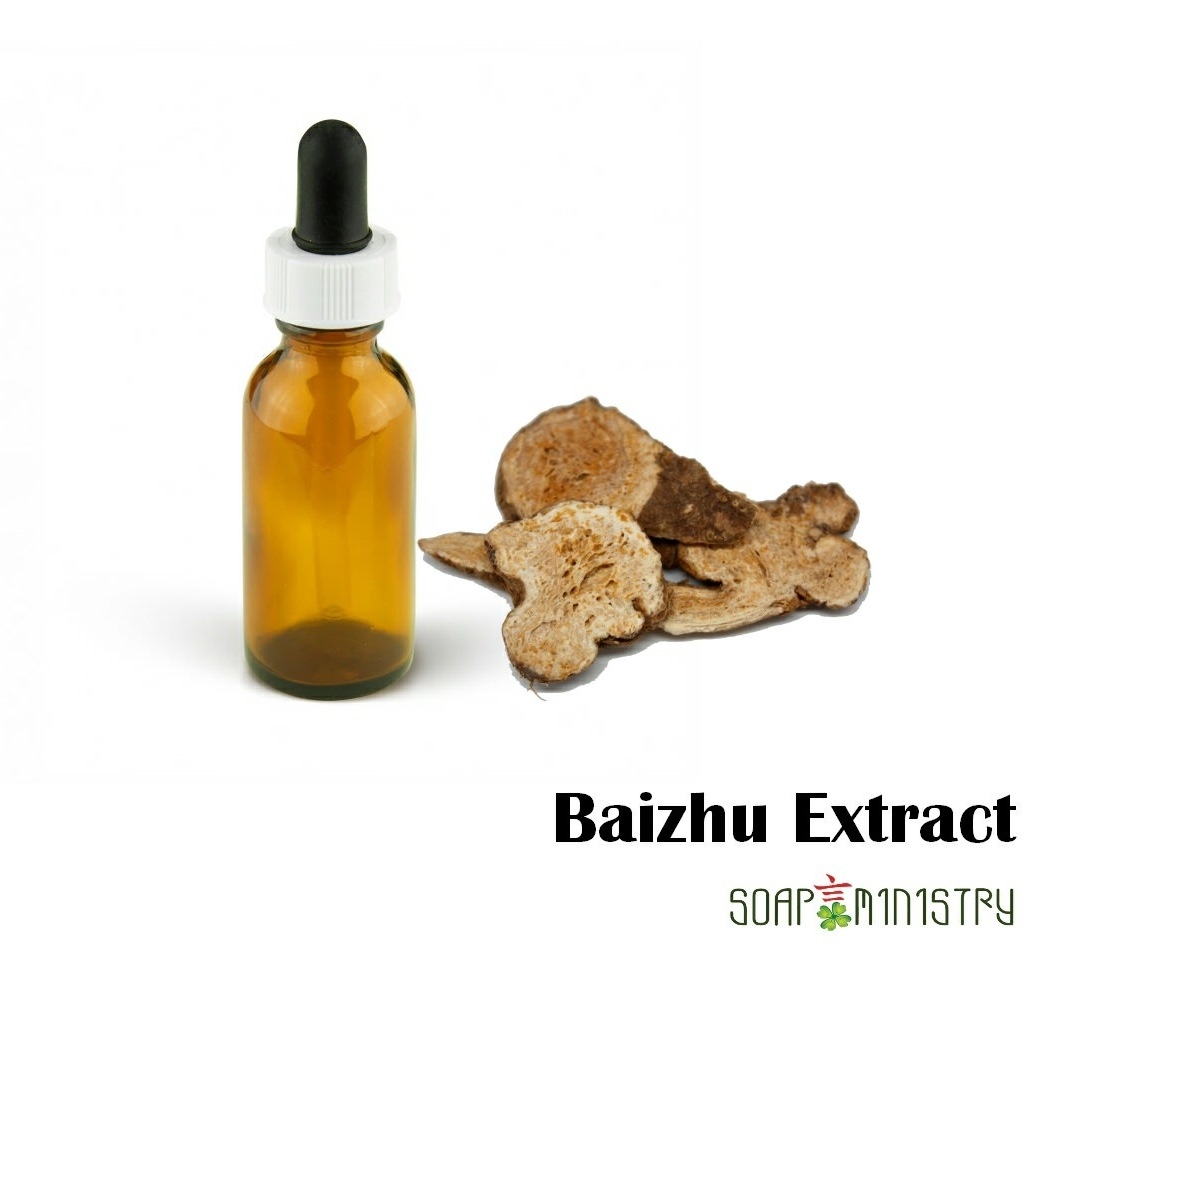 Baizhu Extract 15g